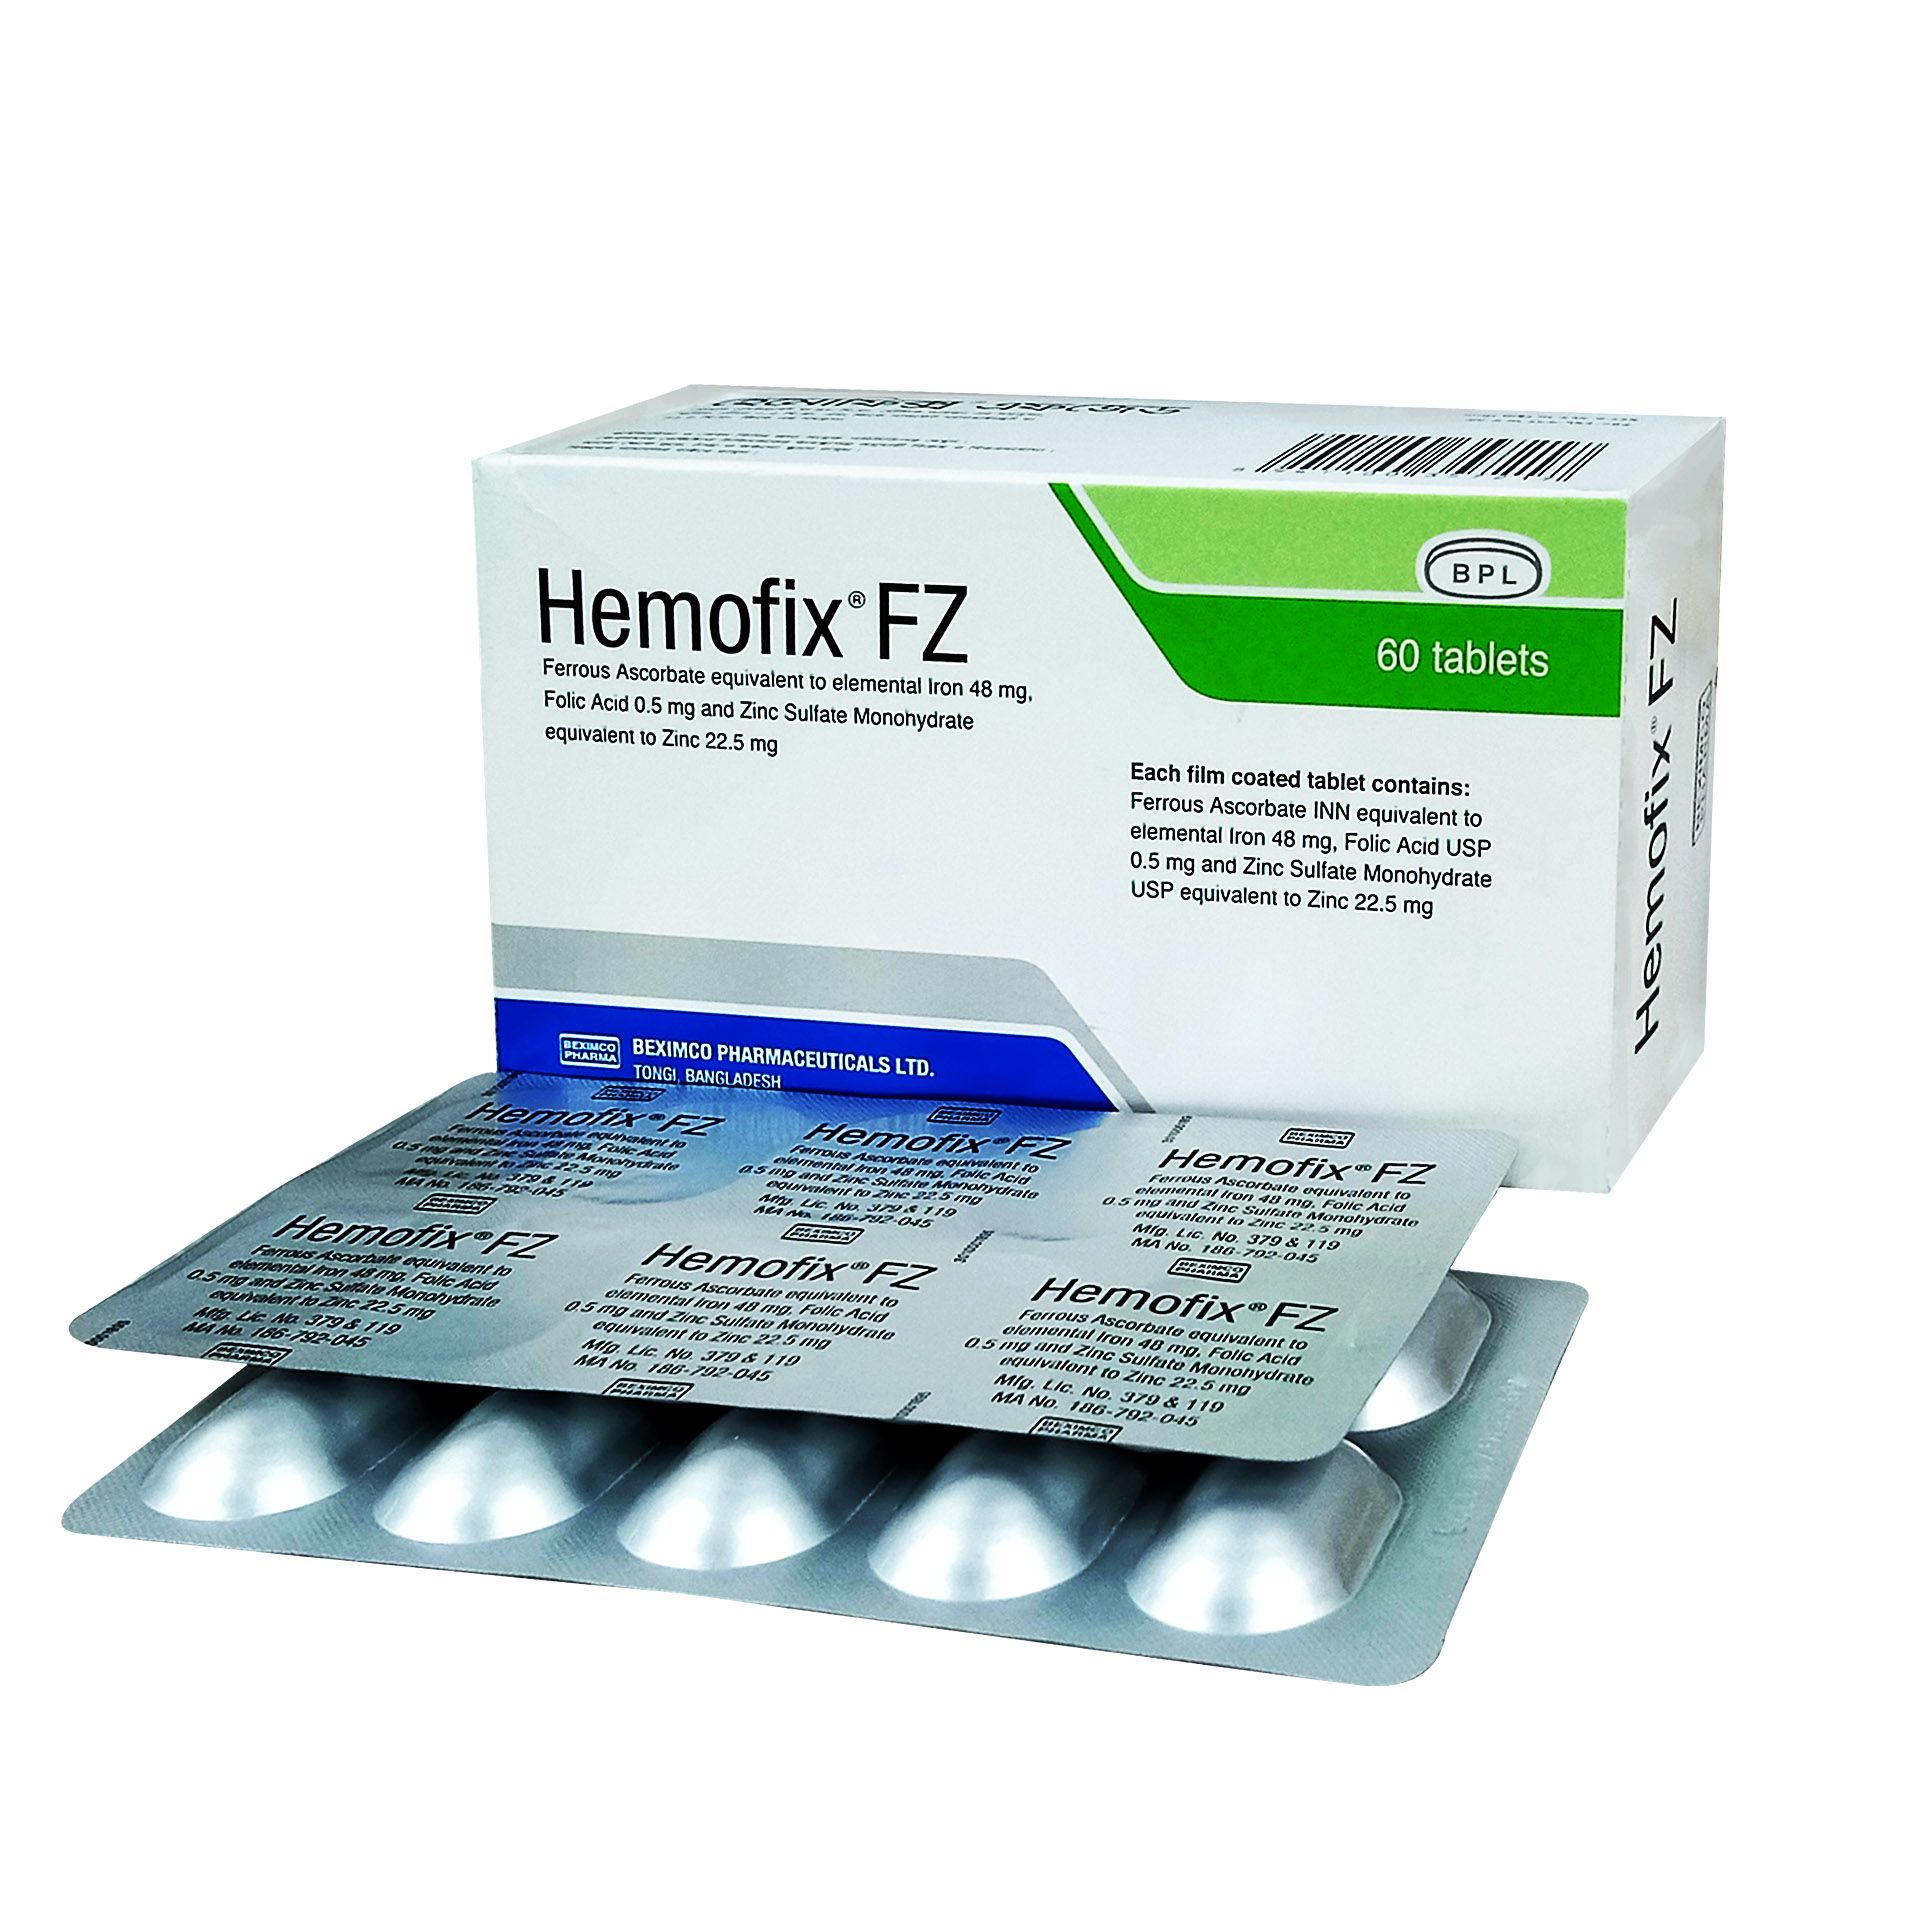 Hemofix FZ 48mg+0.5mg+22.5mg Tablet